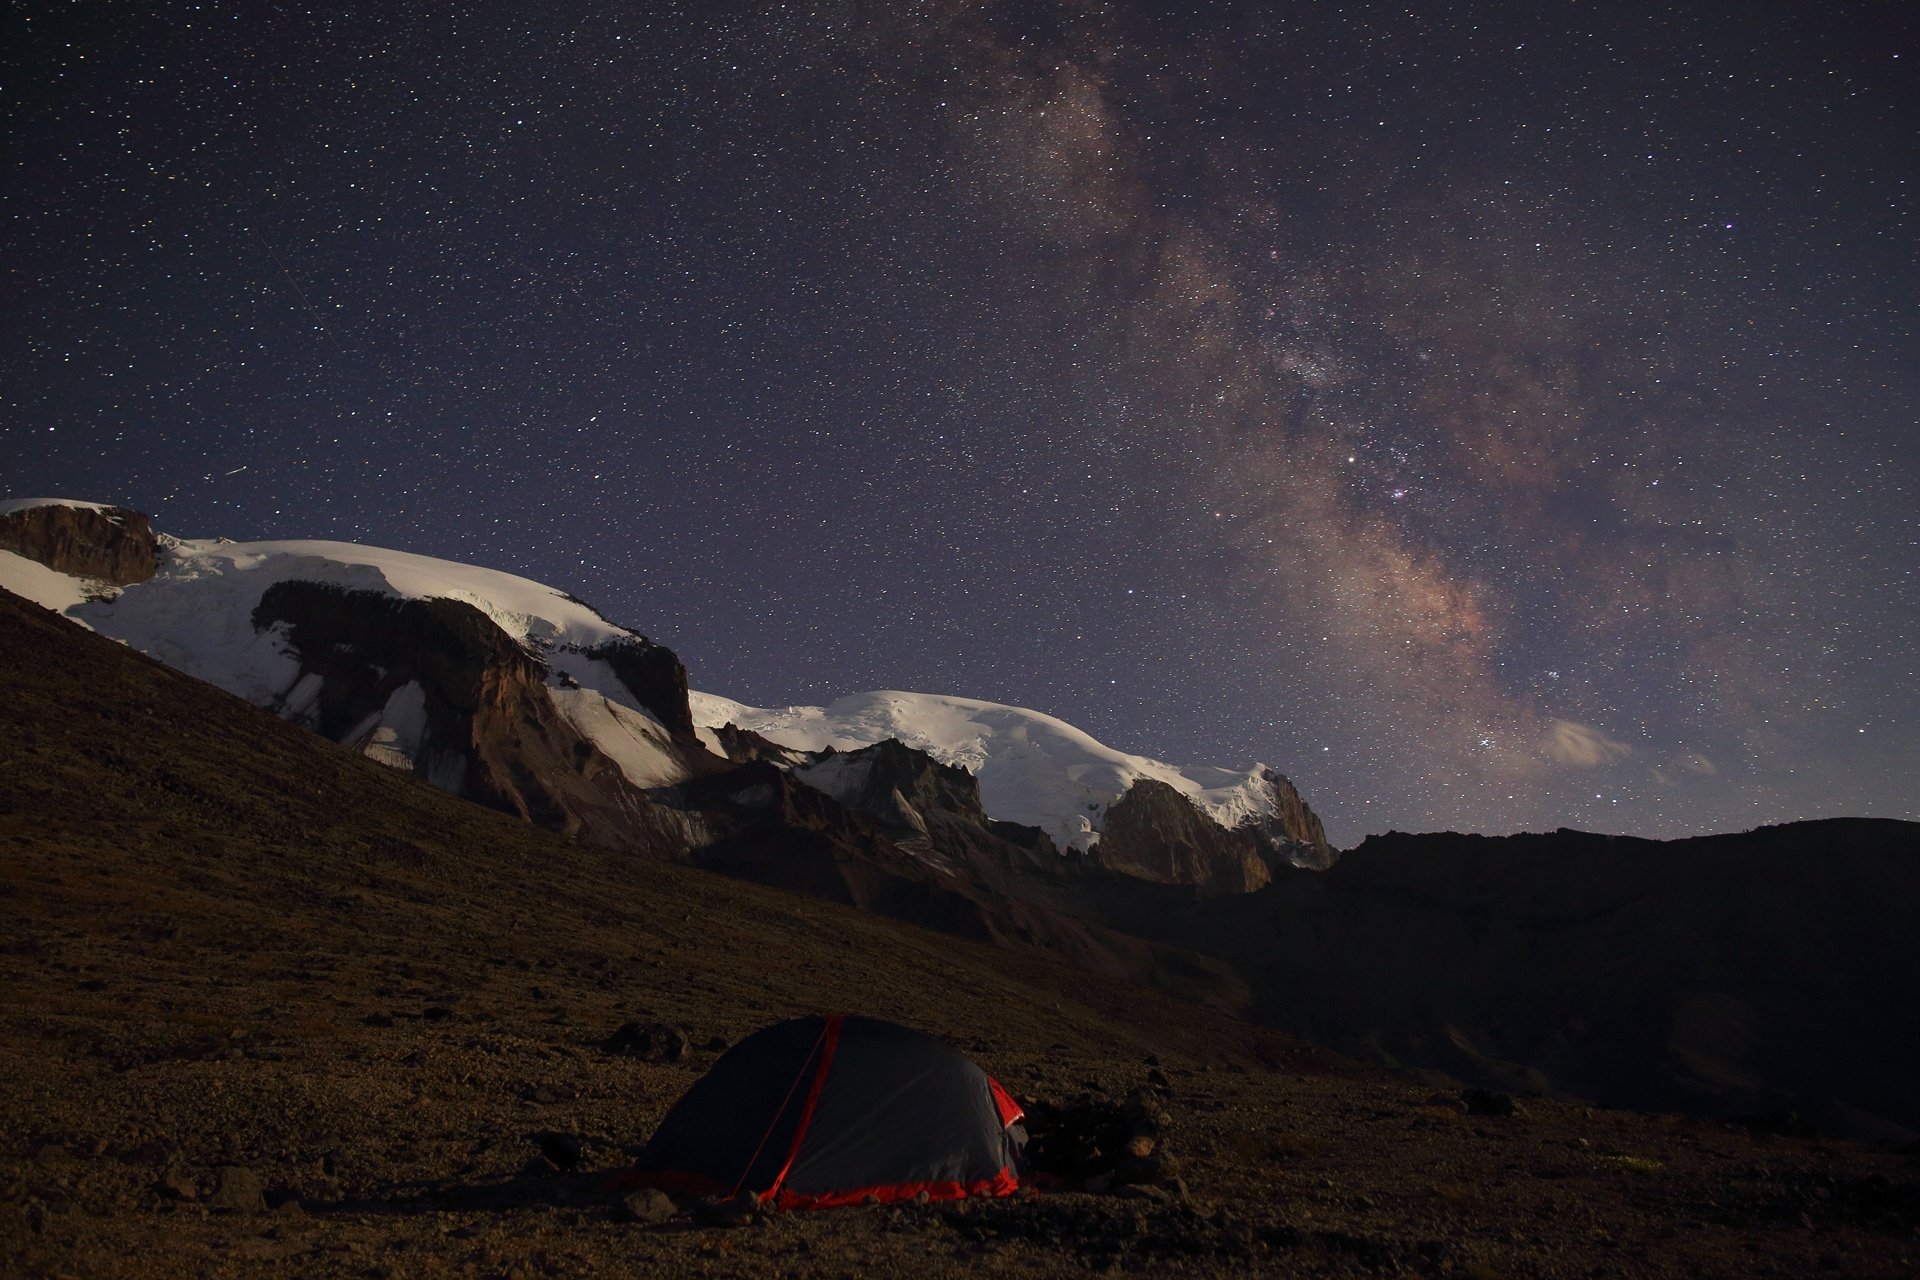 эльбрус ночь звезды созвездия млечный путь горы палатка пеший туризм астрономия, Михаил Рева